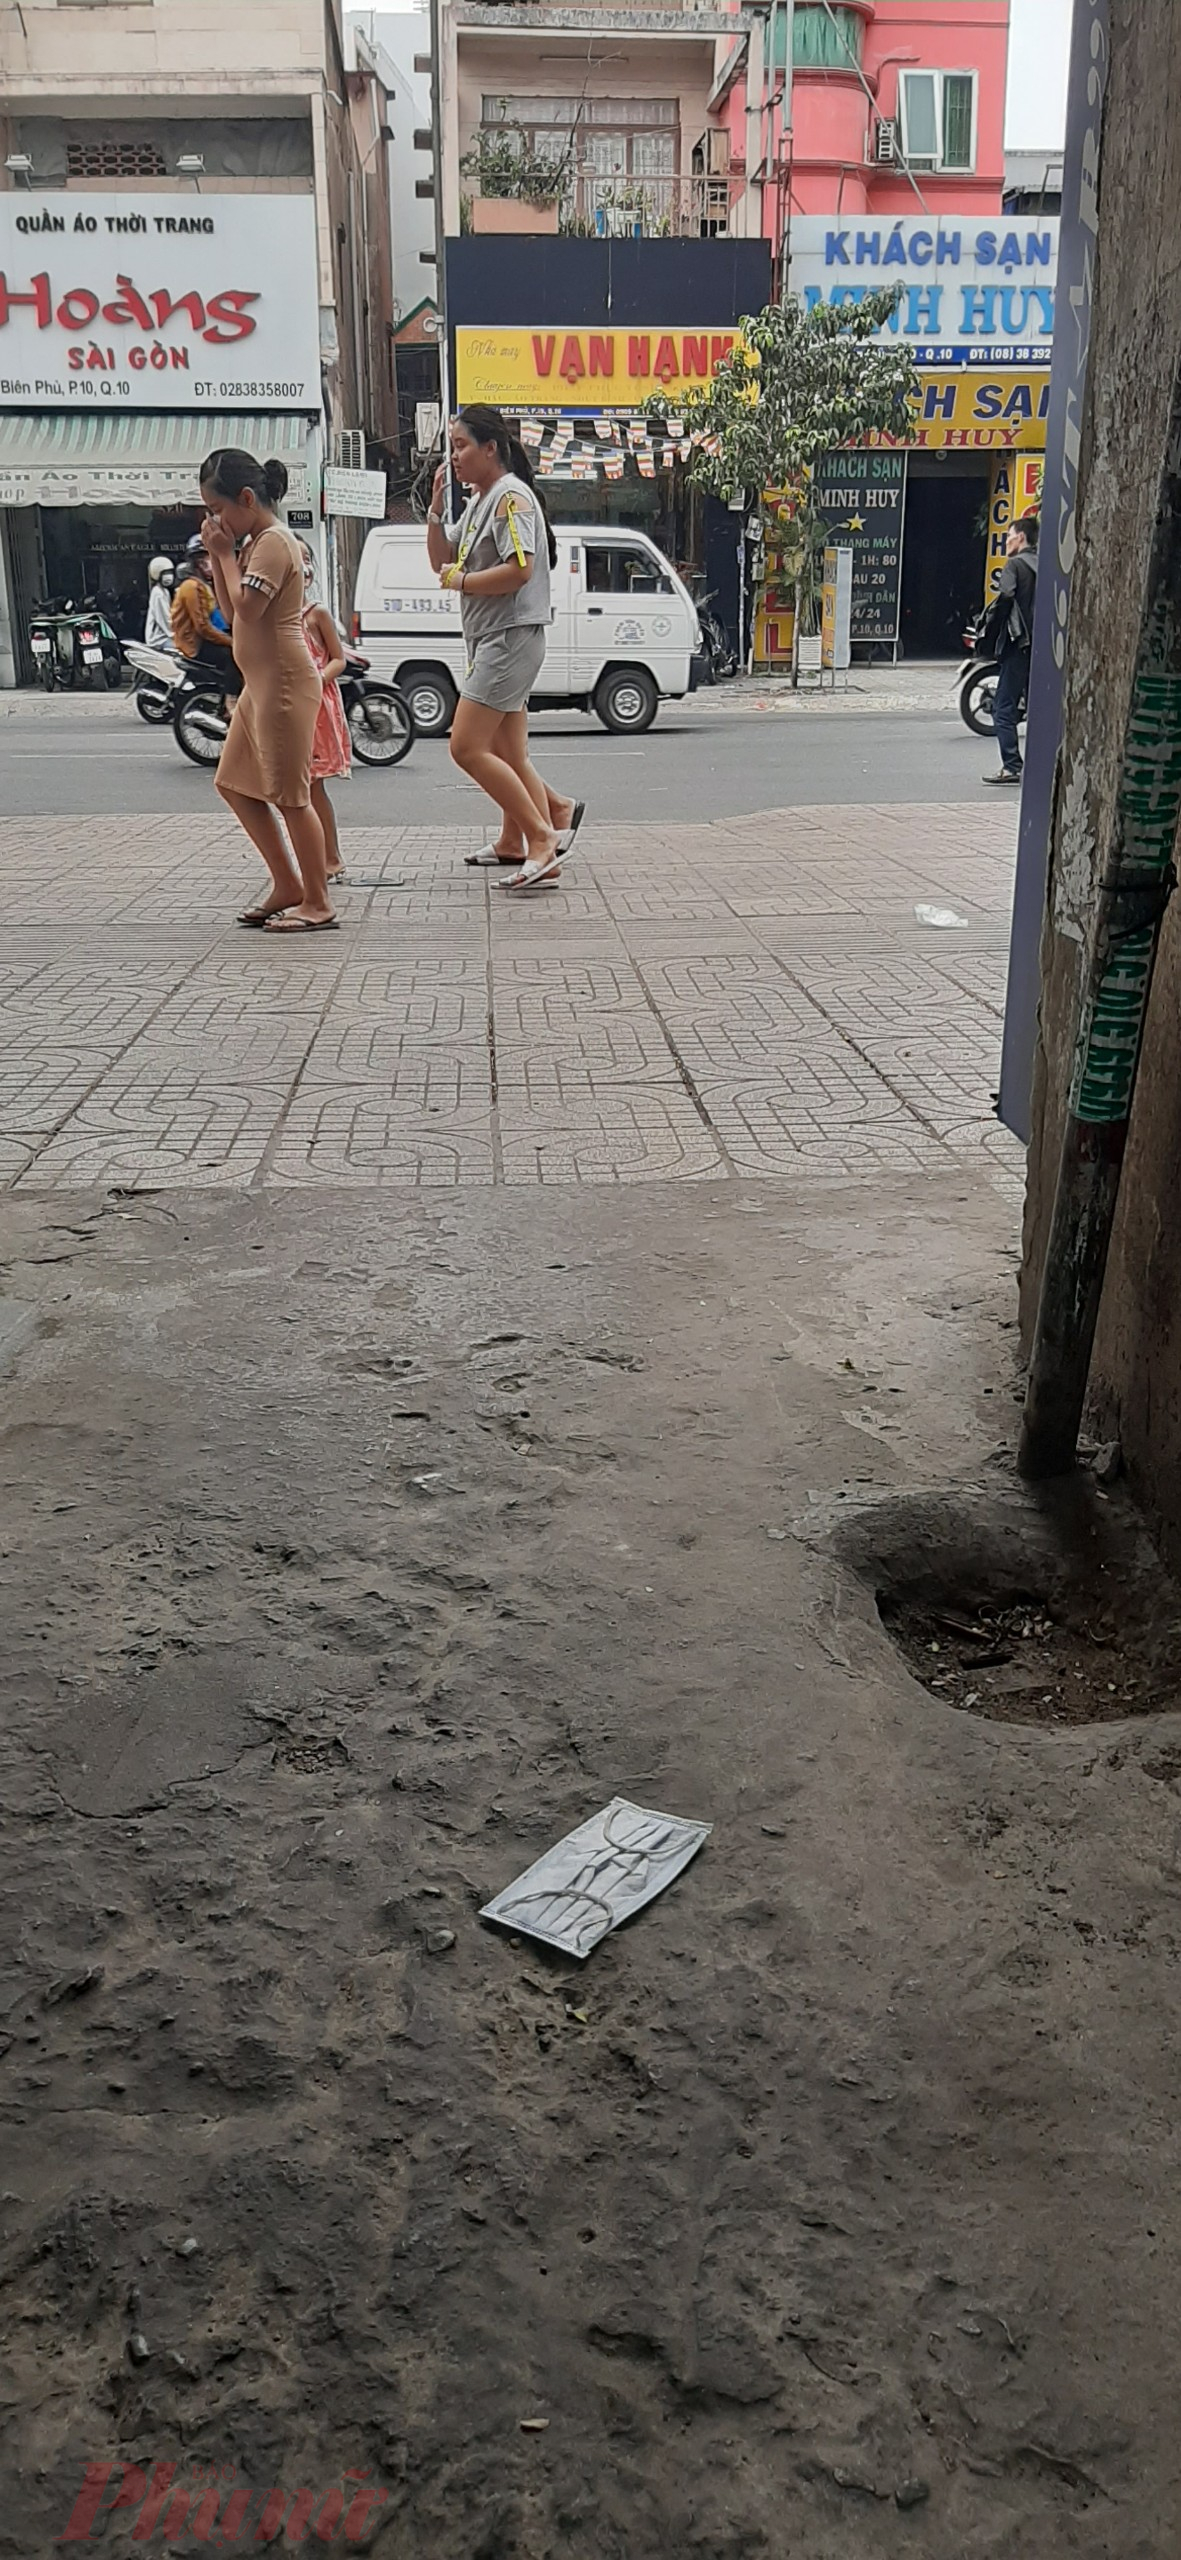 Trên tuyến đường Điện Biên Phủ, cứ cách một đoạn, người đi đường rất dễ nhận ra, các loại khẩu trang y tế đã qua sử dụng bị bỏ lại ngay dưới lòng đường, trên vỉa hè. Trong ảnh, một khẩu trang được vứt 